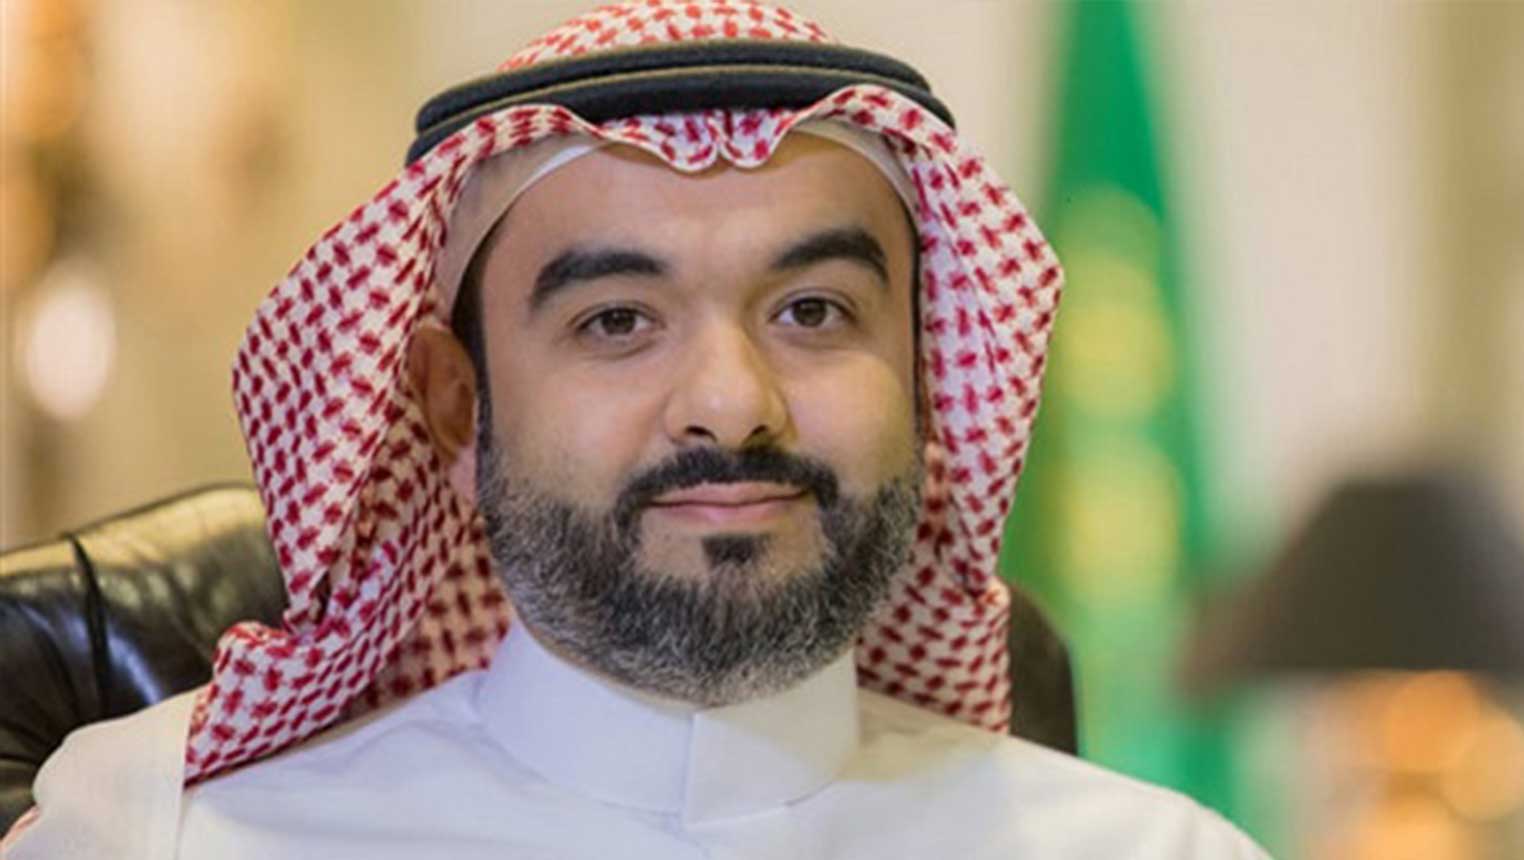 السواحة: لأول مرة السعودية تنال حصتها العادلة من الاستثمار الجريء بنسبة 52%